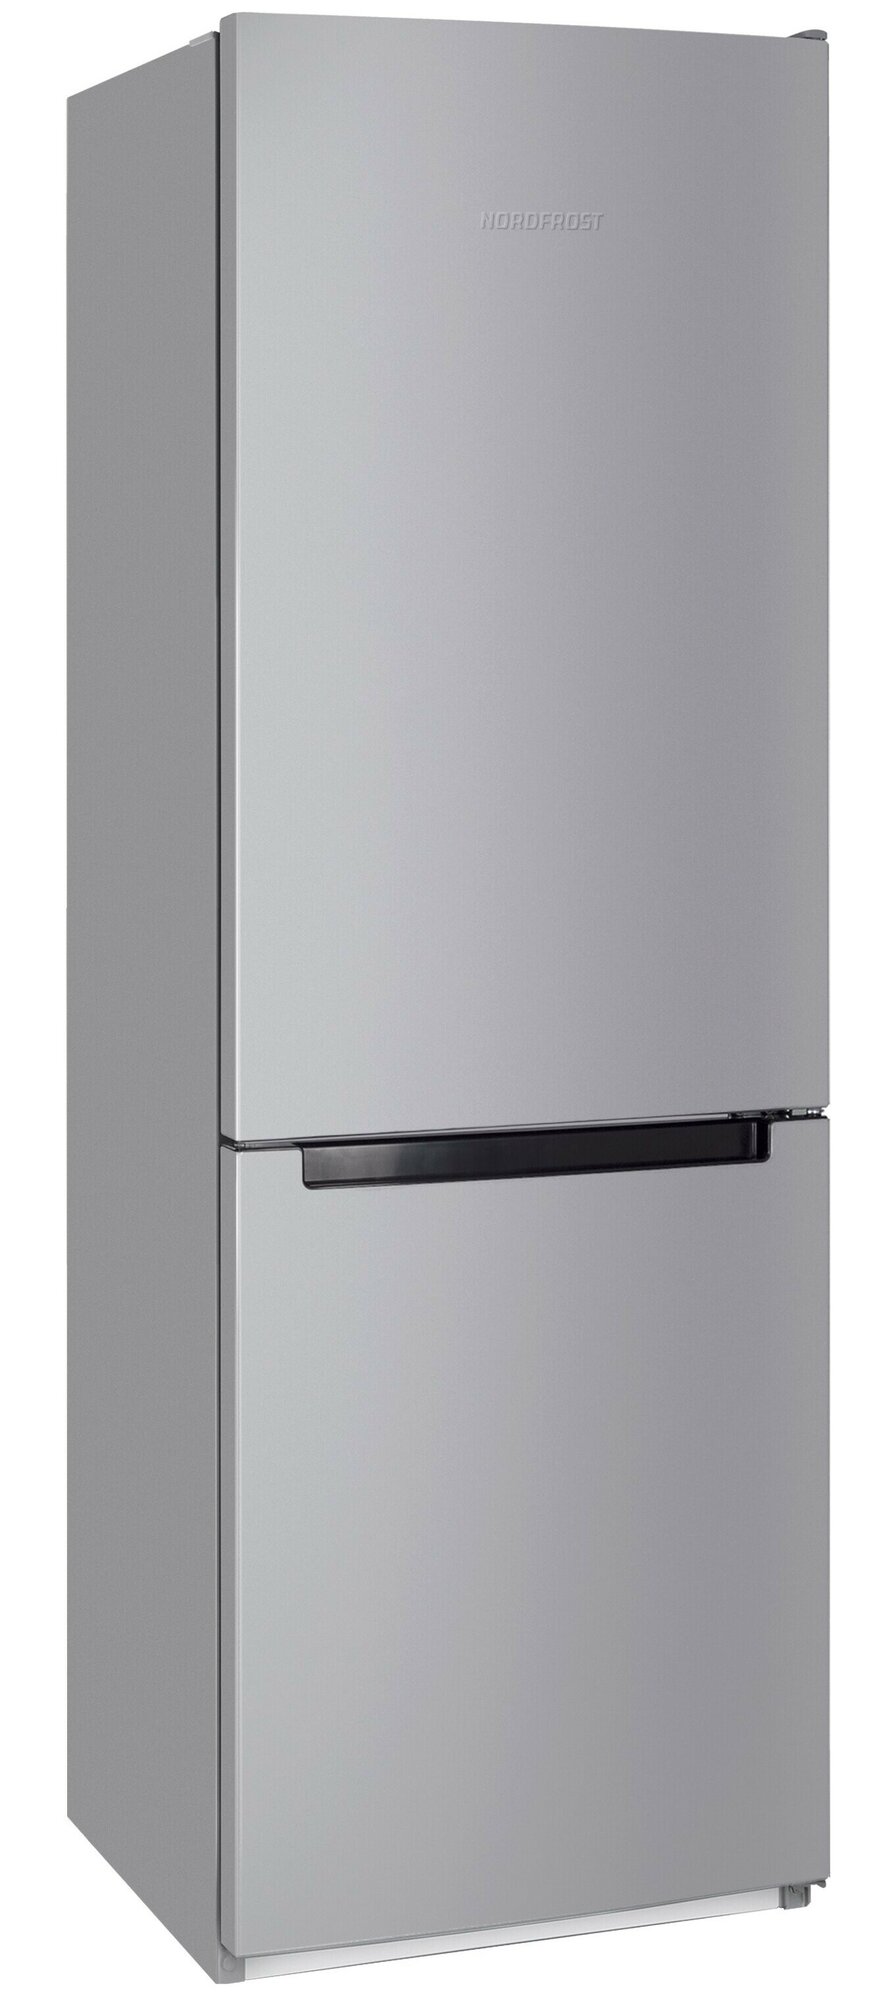 Холодильник NORDFROST NRB 132 S двухкамерный 305 л объем серебристый